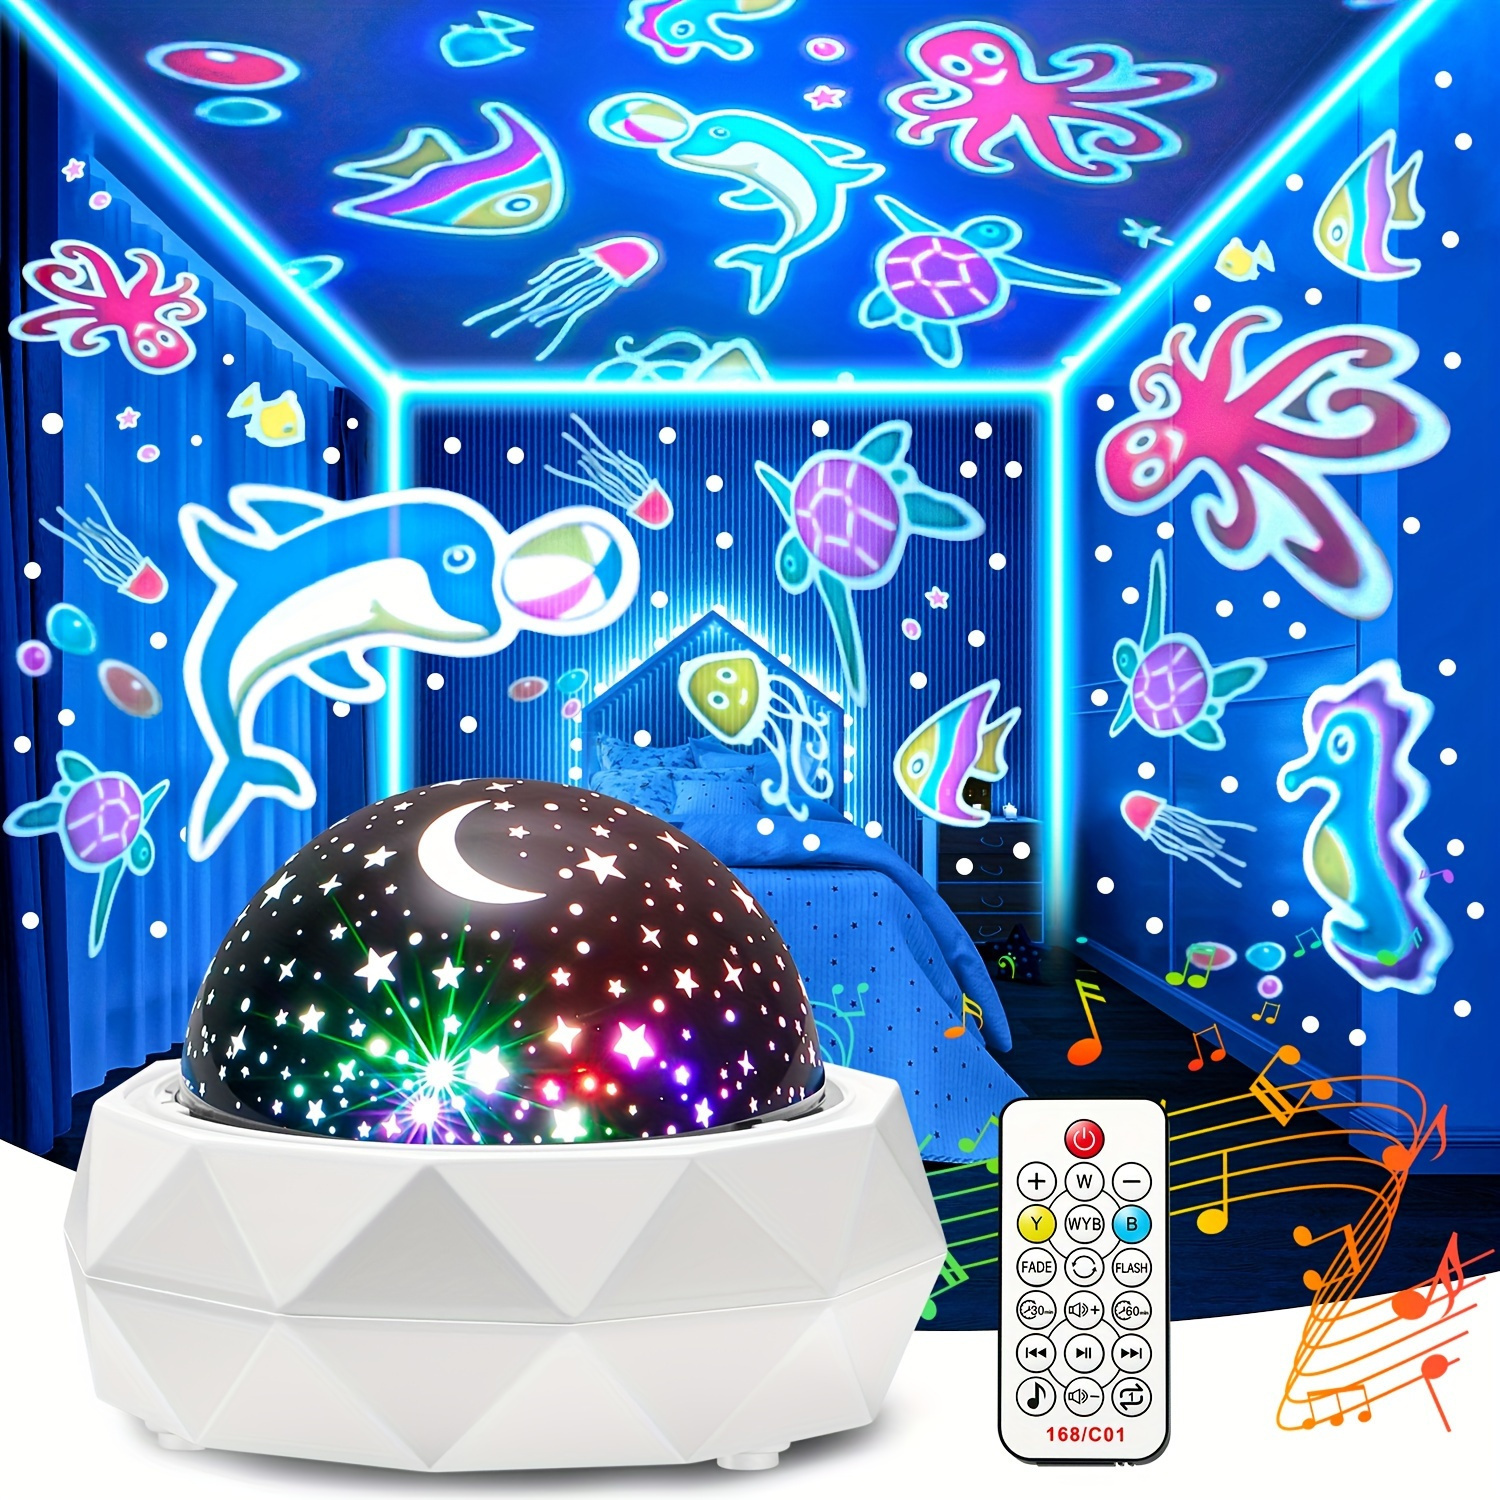 

8 couleurs + 3 projecteur de veilleuse 360° avec 12 sons et films apaisants - Télécommande et minuterie automatique - Cadeau de Noël parfait